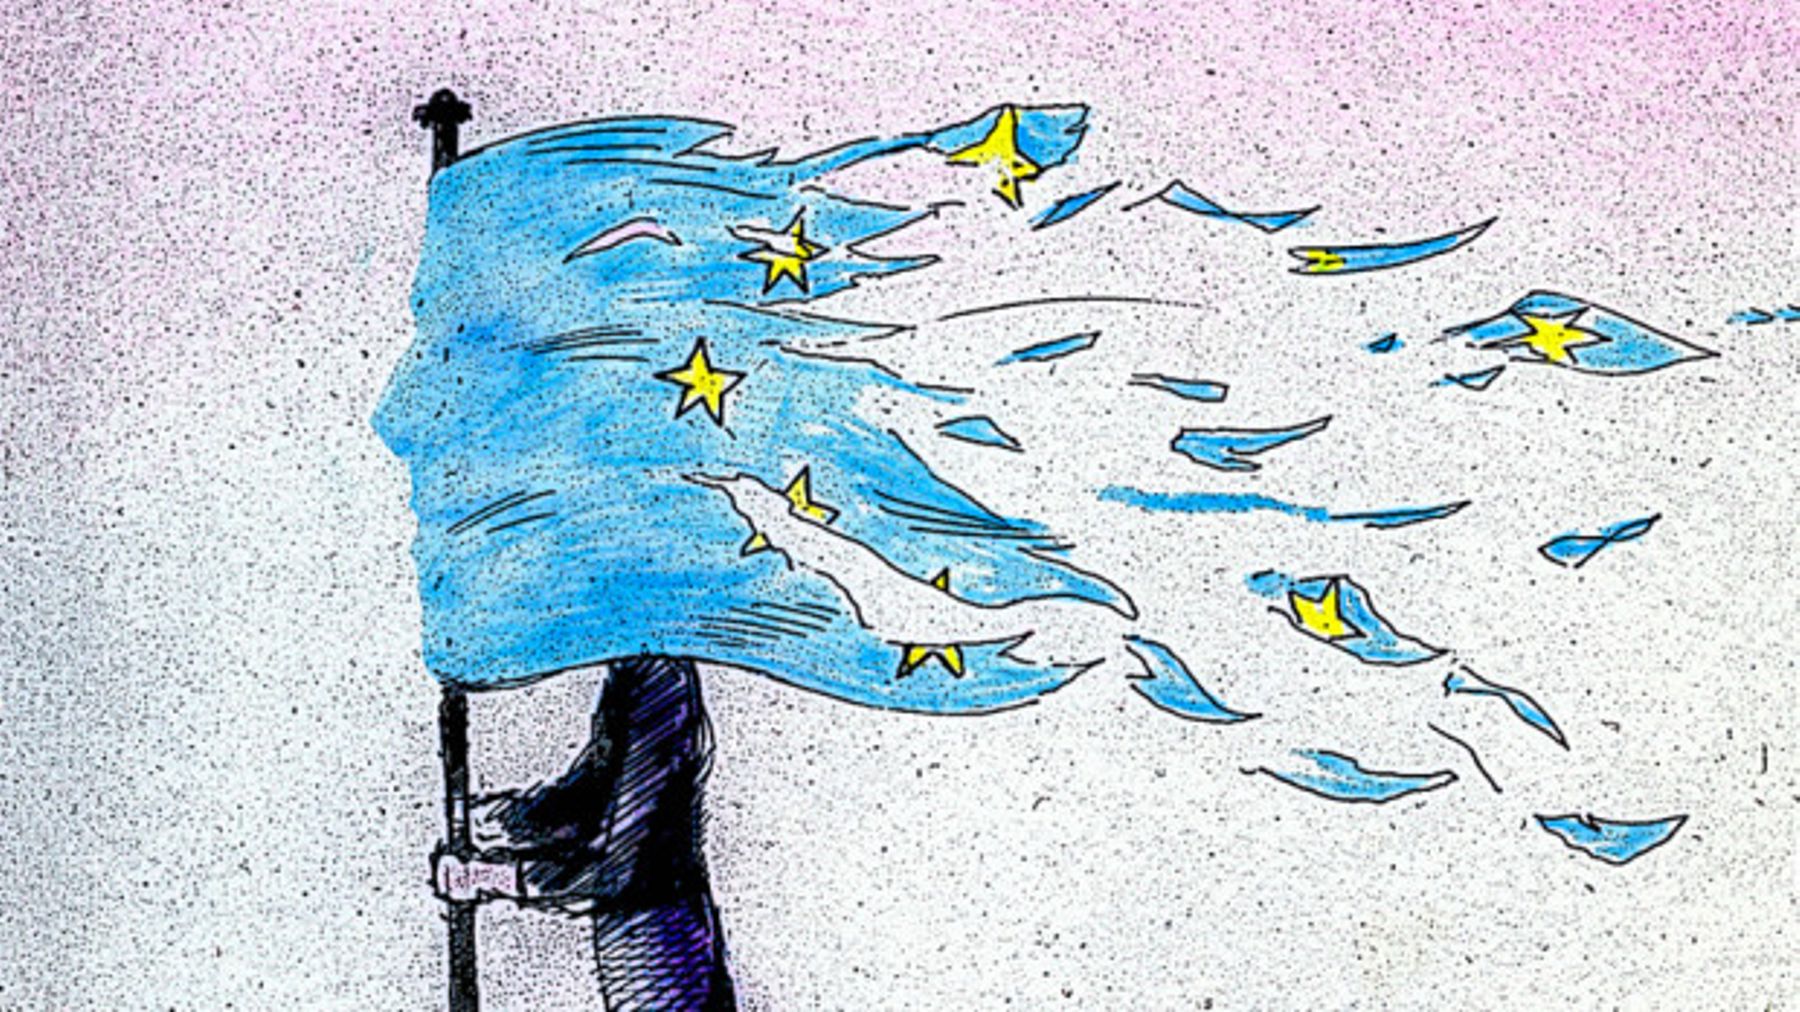 Ο Κωνσταντίνος Μαργαρίτης σημειώνει ότι οι Ευρωεκλογές προσφέρουν στην Ελλάδα μια ευκαιρία για νέα ευρωπαϊκή πορεία. Ωστόσο ο δρόμος προς τις Ευρωεκλογές έχει πολλές τεχνητές εντάσεις και ελάχιστη κουβέντα για το μέλλον της Ευρώπης. new deal